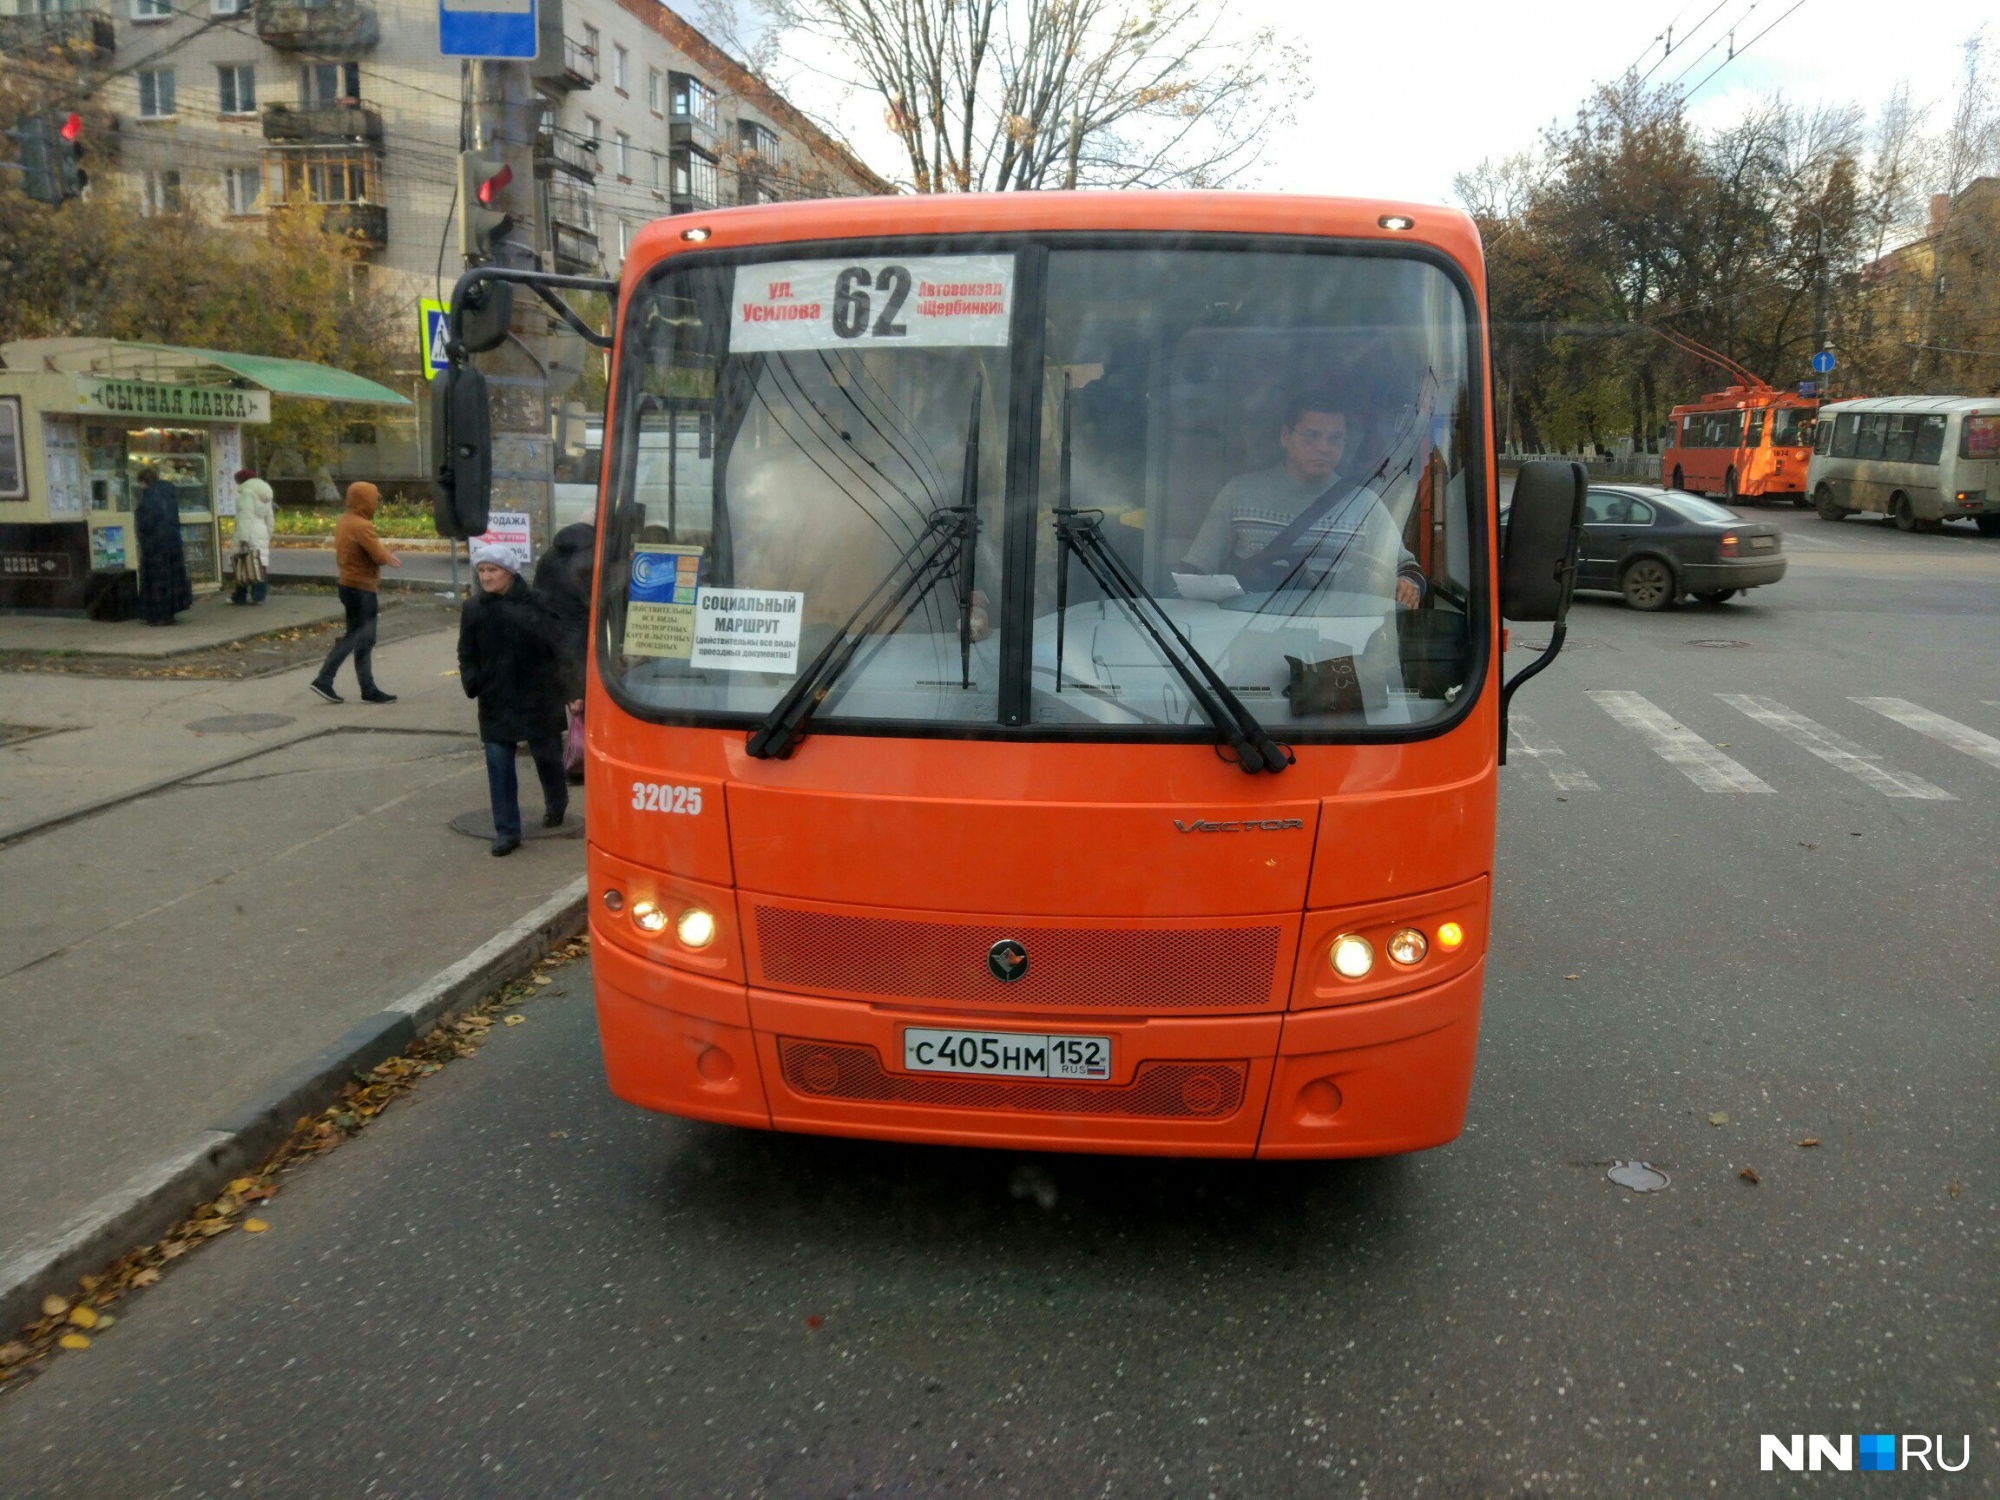 Лайфхак для нижегородского пассажира. Как определить автобус, в котором действует проездной